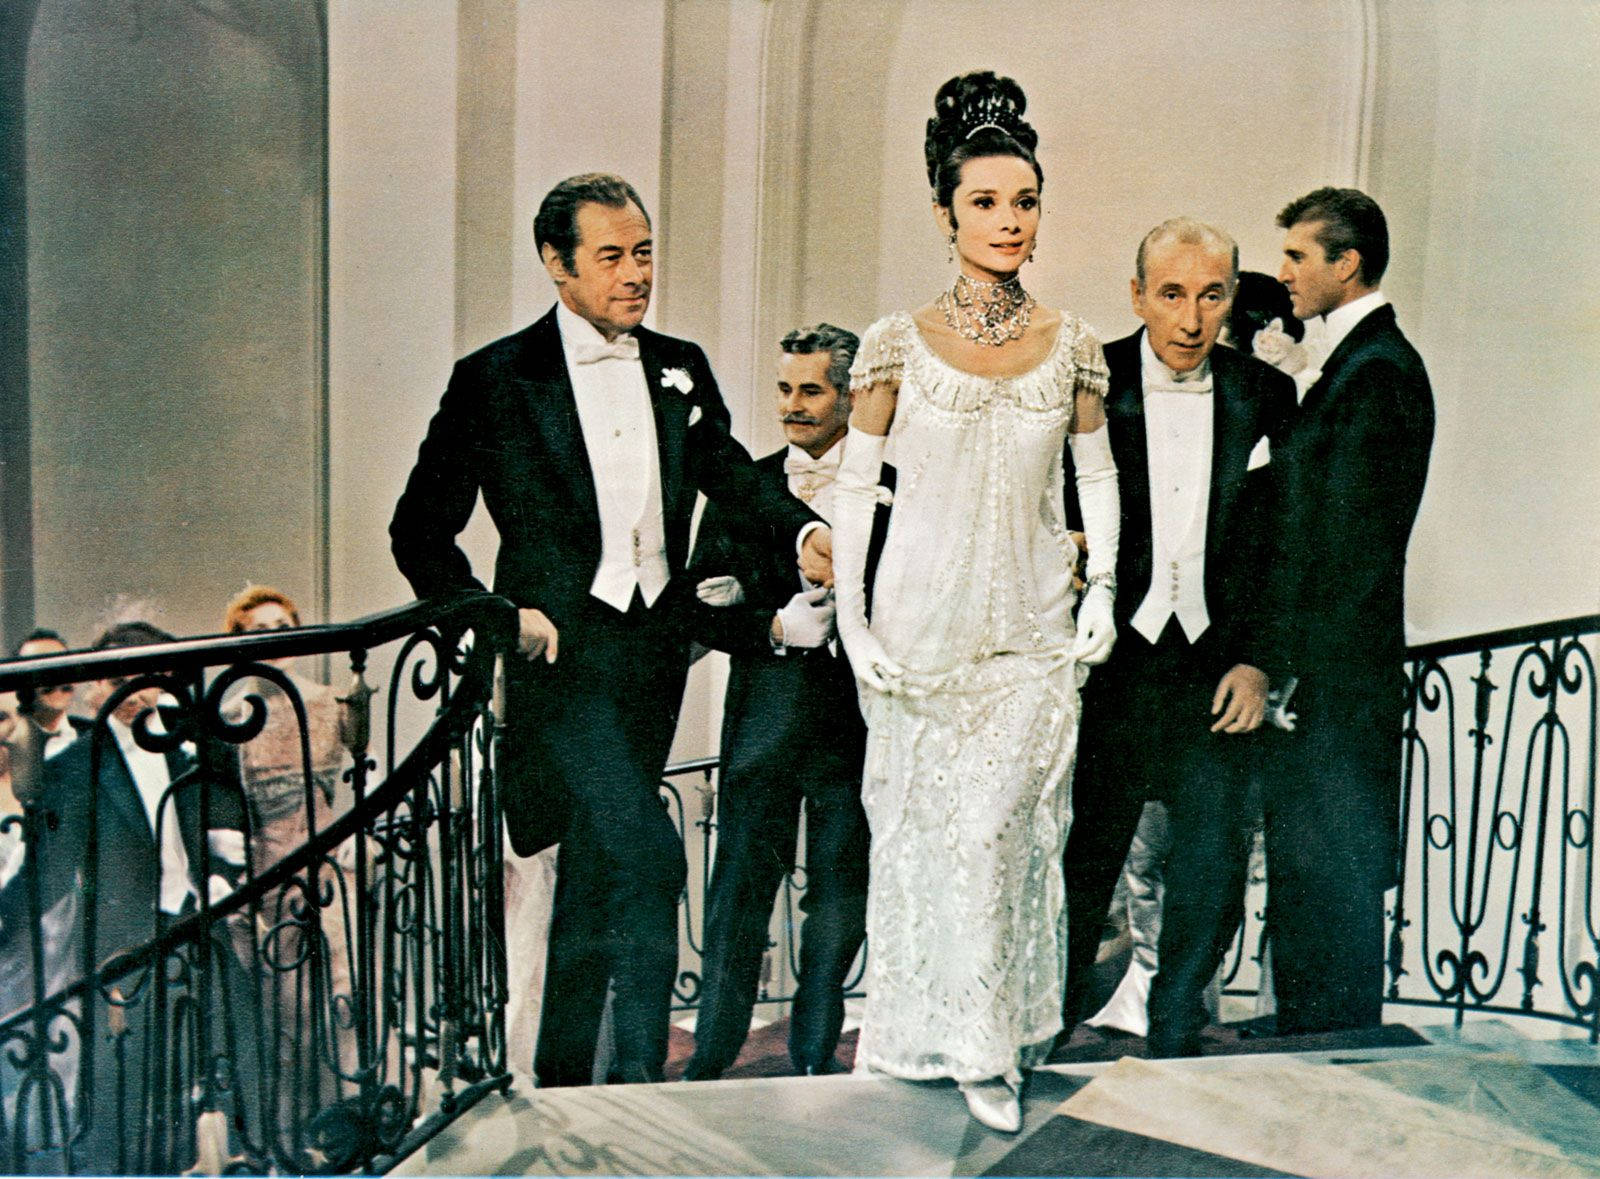 Rex Harrison kigger på Audrey Hepburn i en kjole. Wallpaper